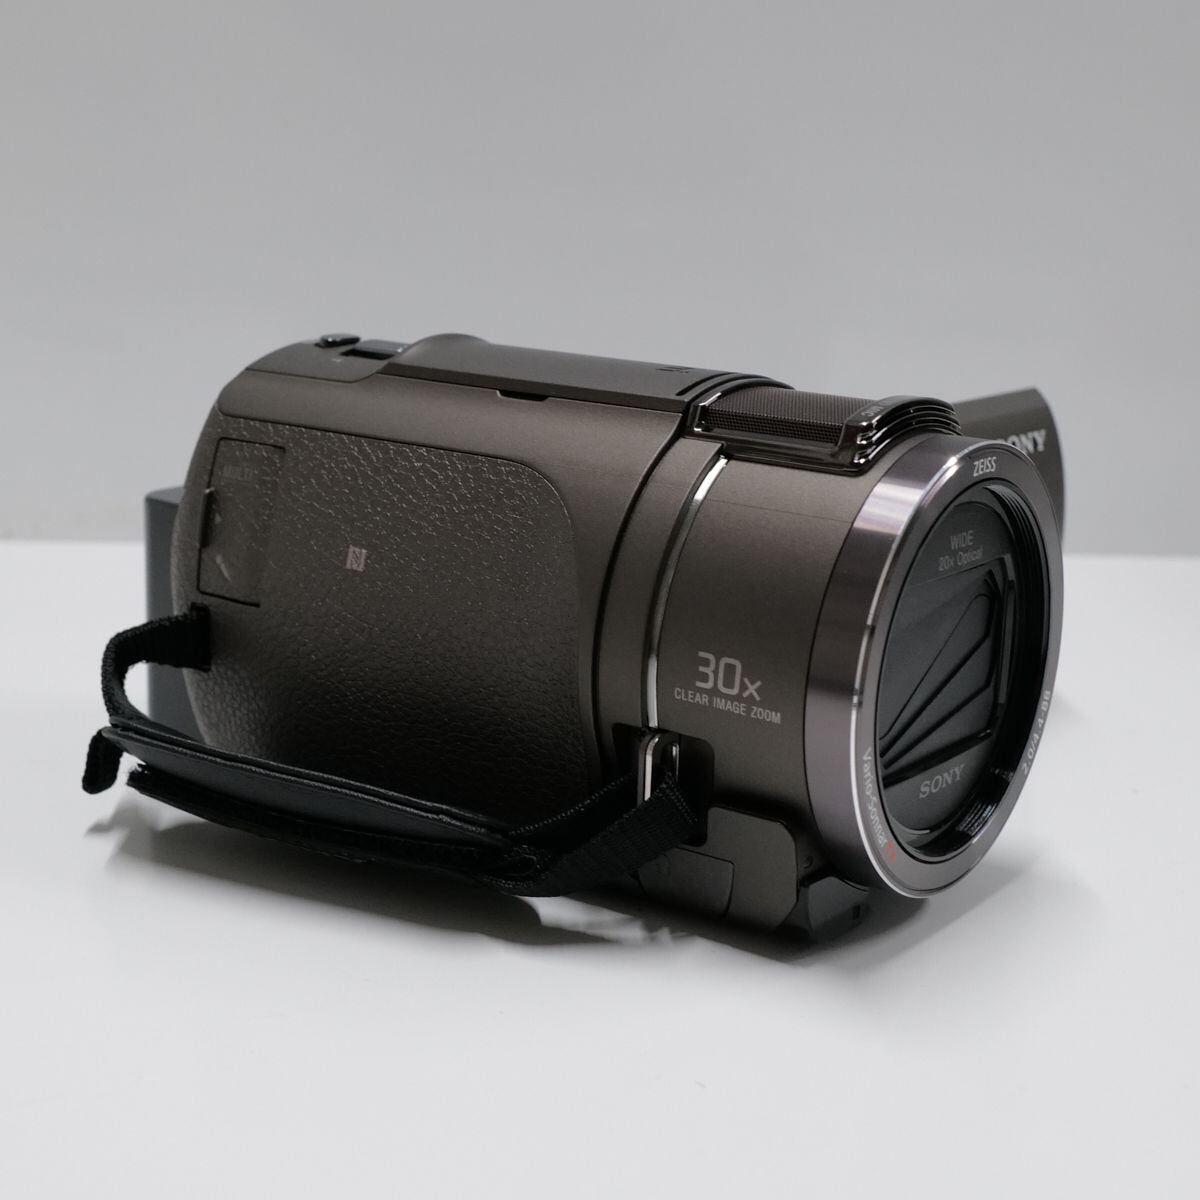 SONY FDR-AX45 4K ビデオカメラ完動品